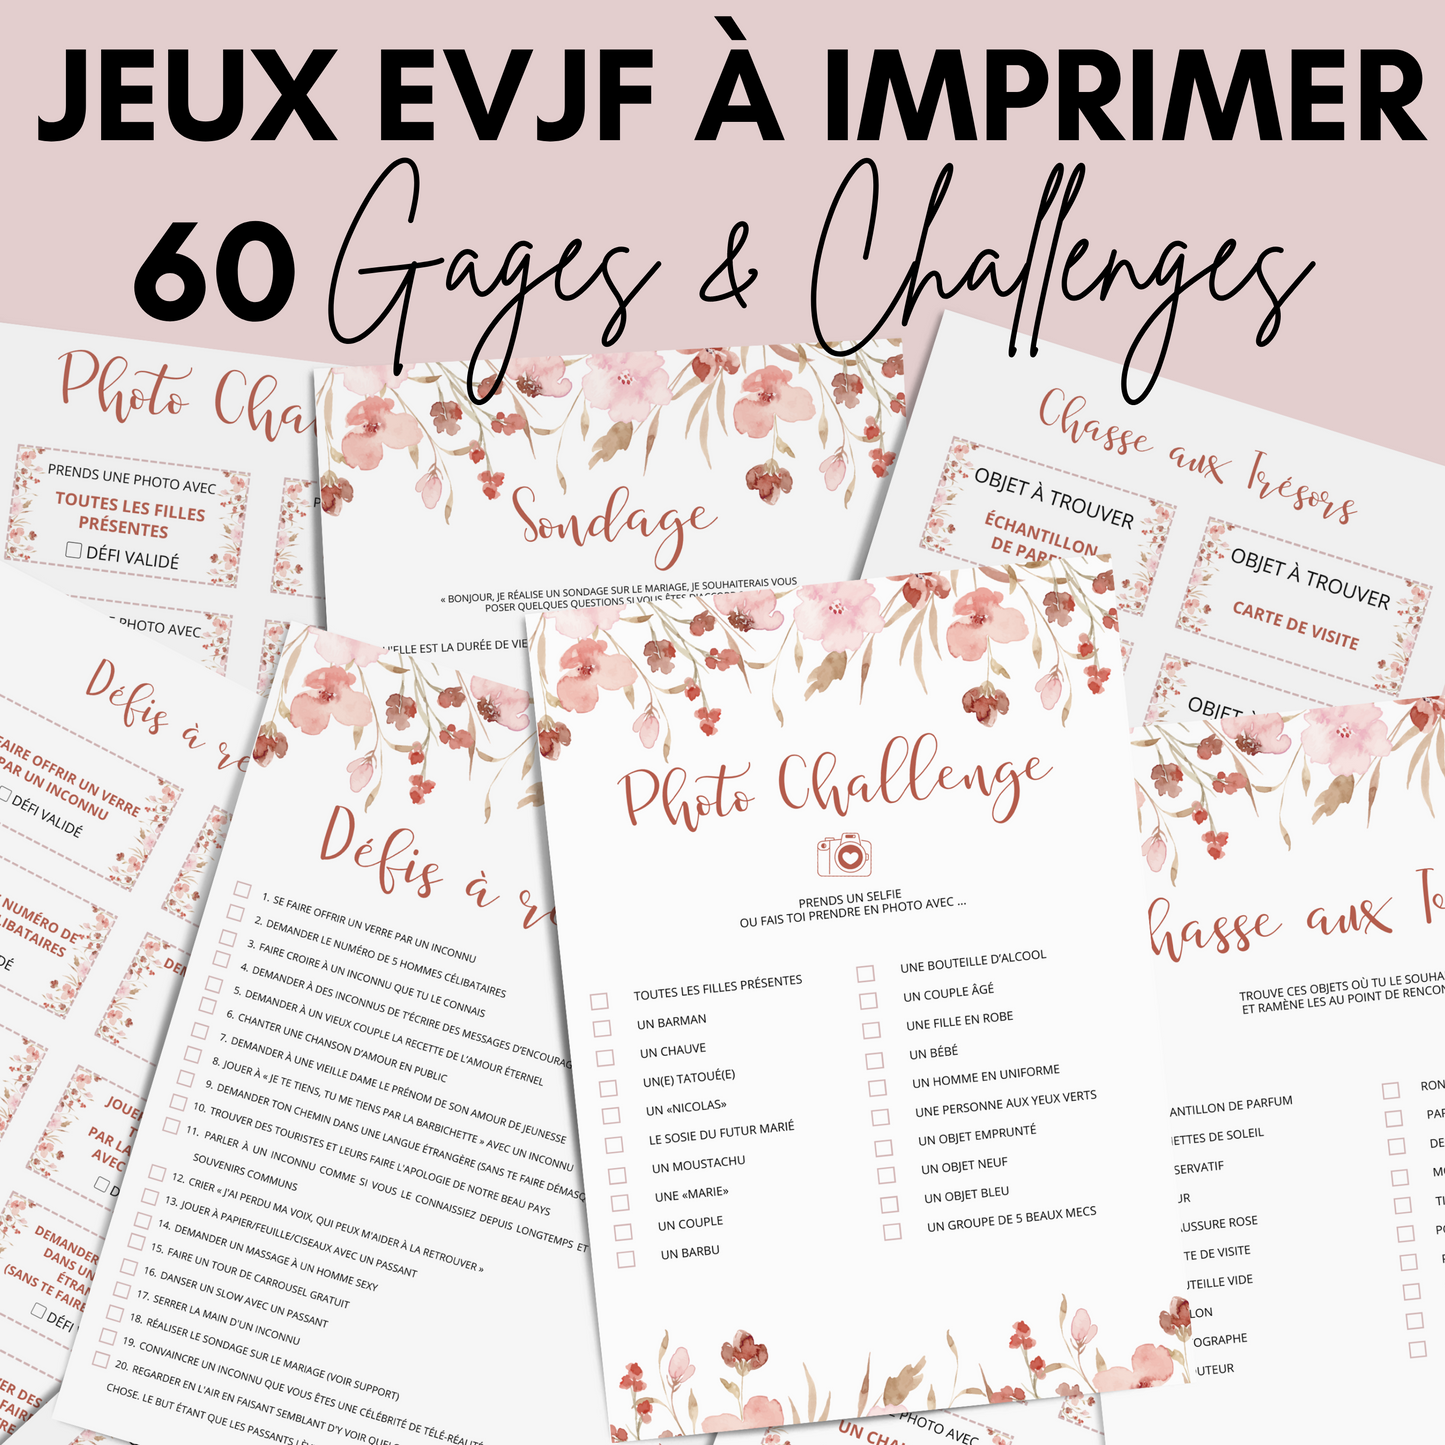 Jeux EVJF à imprimer - 60 Gages, Défis & Challenges pour un enterrement de vie de jeune fille - Activités EVJF - Animations EVJF